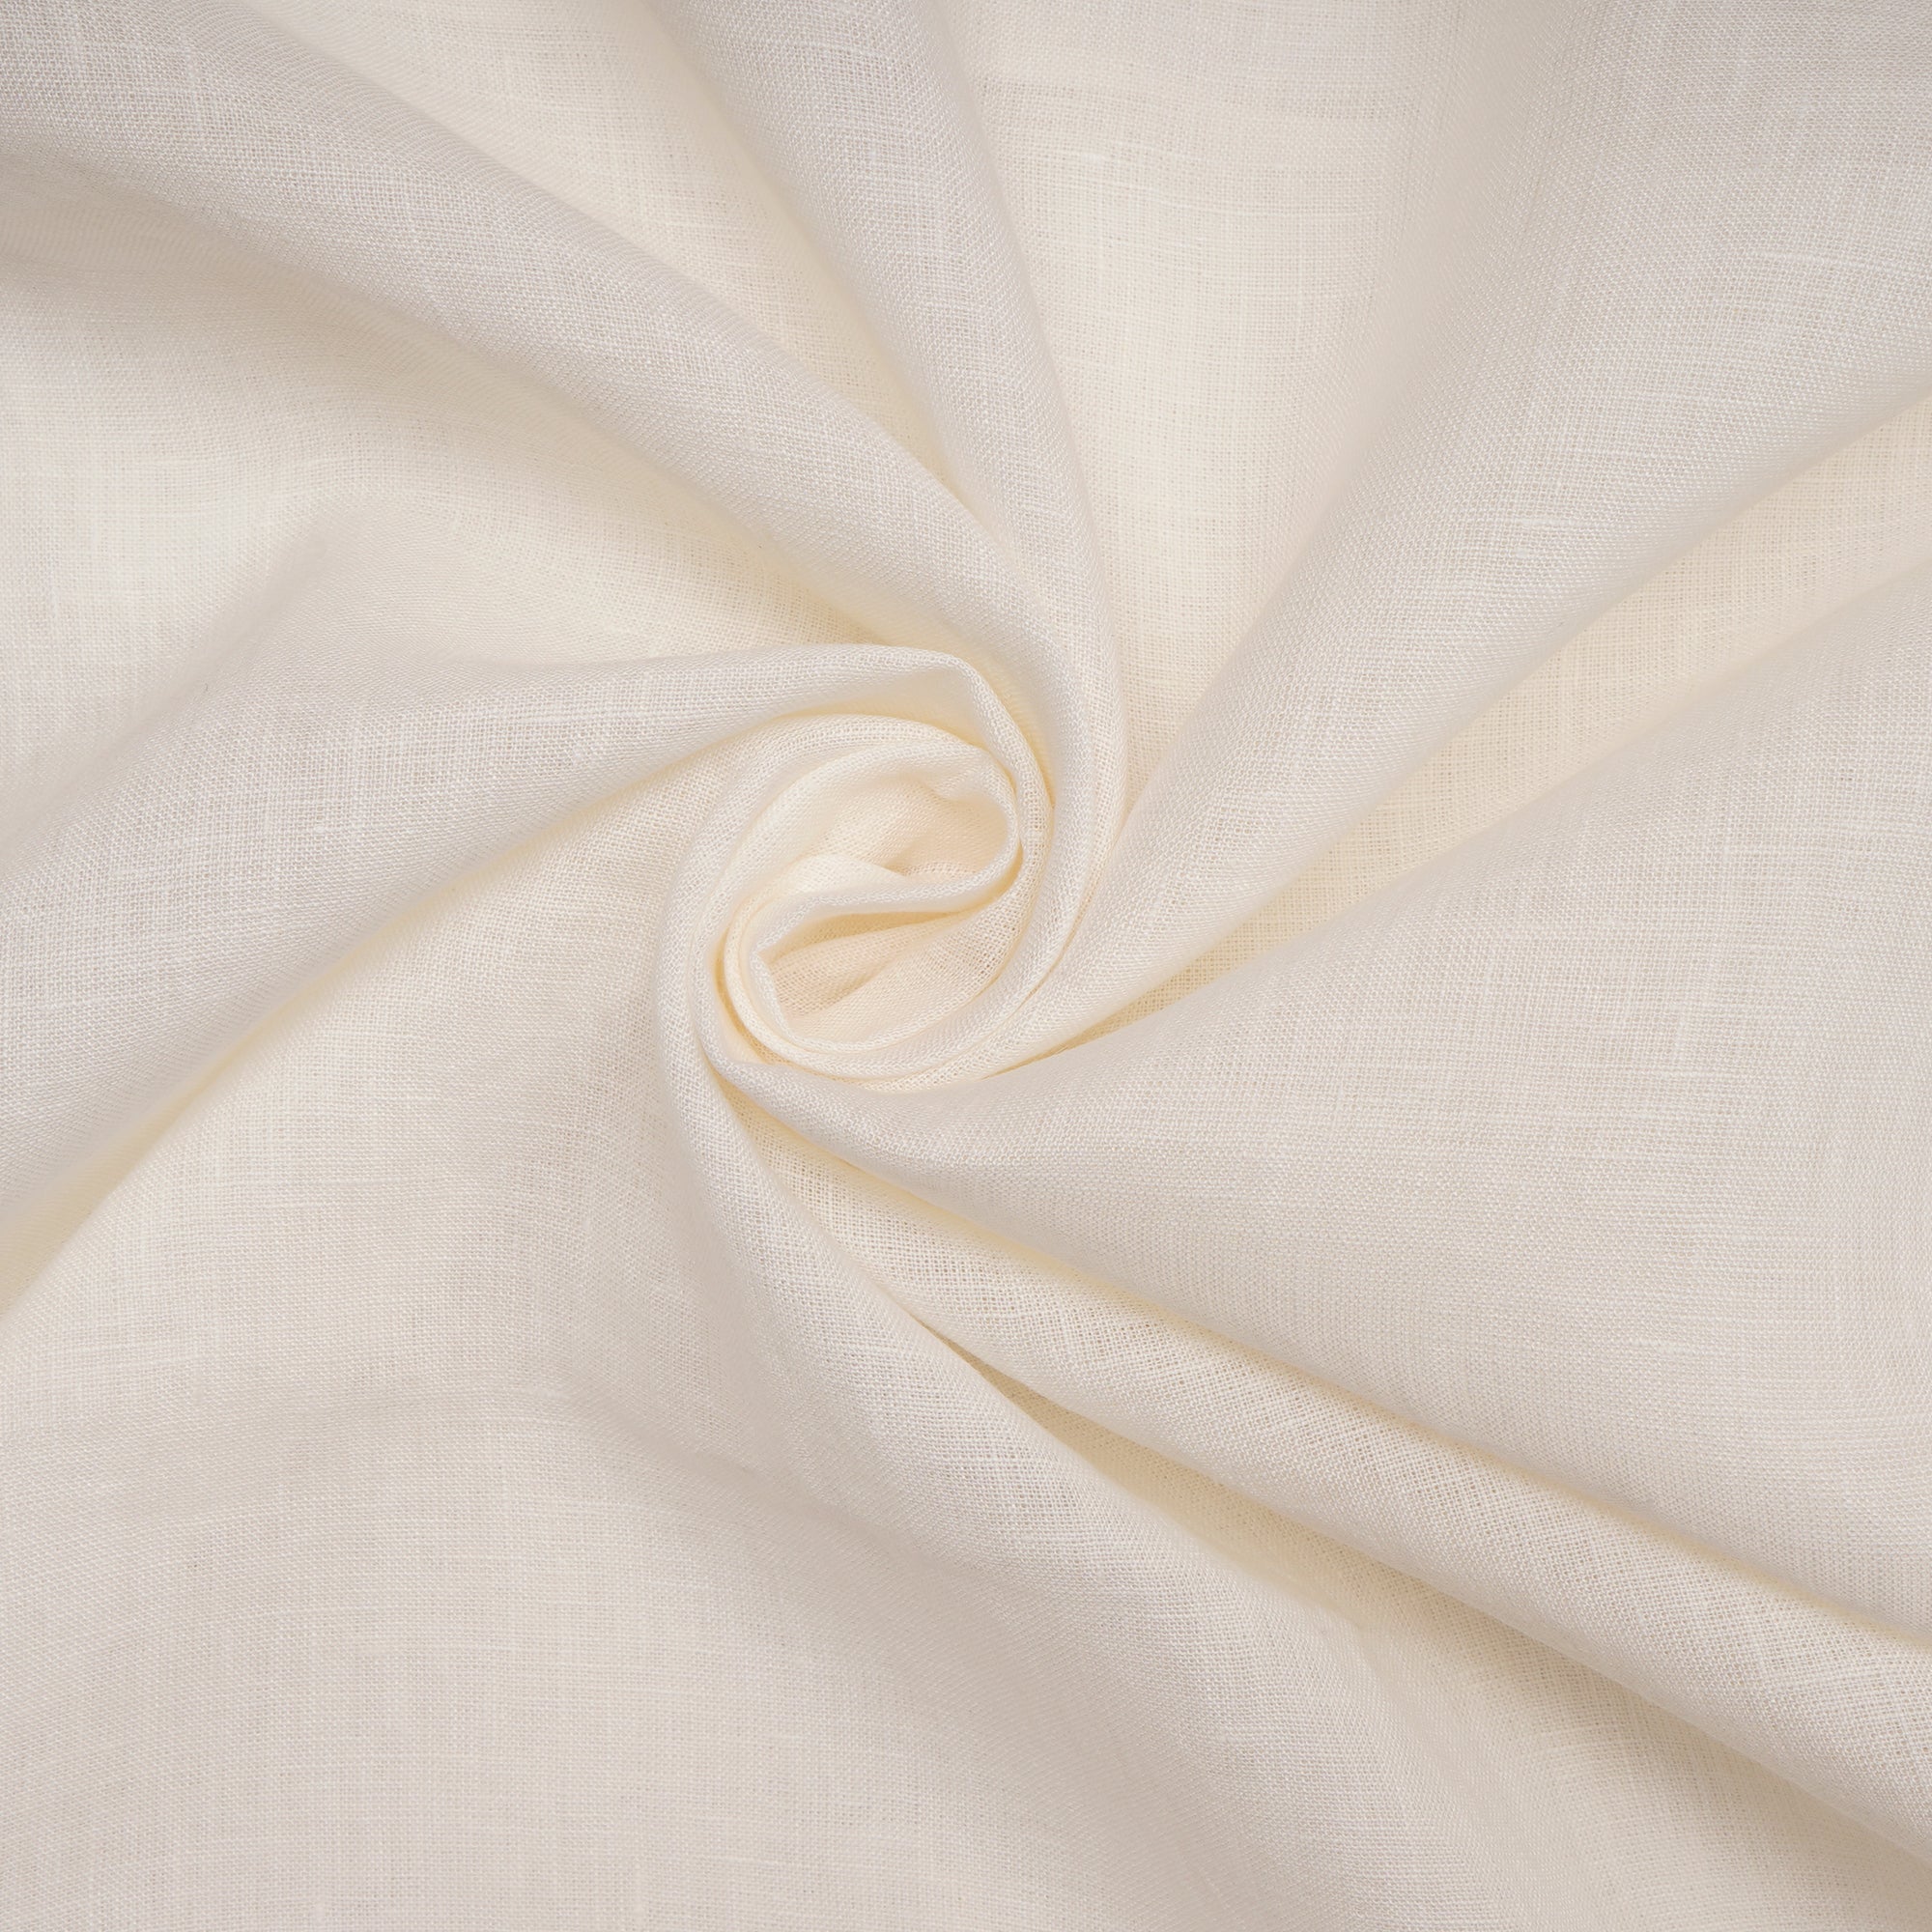 (Pre-Cut 2.50 Mtr) White Premium Linen Fabric